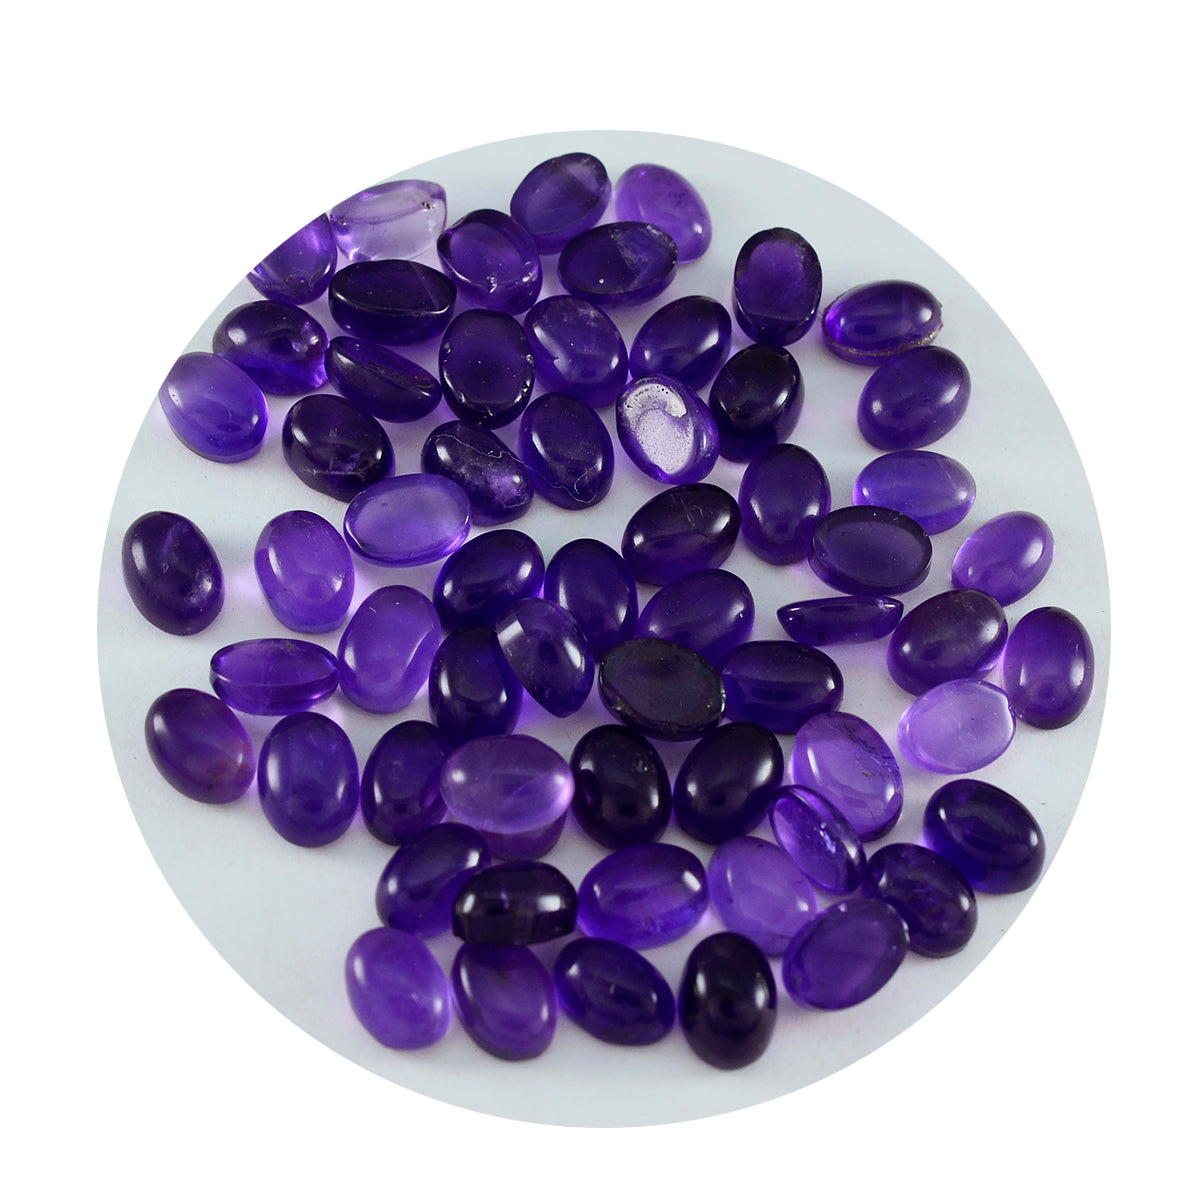 Riyogems 1 Stück lila Amethyst-Cabochon, 3 x 5 mm, ovale Form, A1-Qualitätsedelsteine